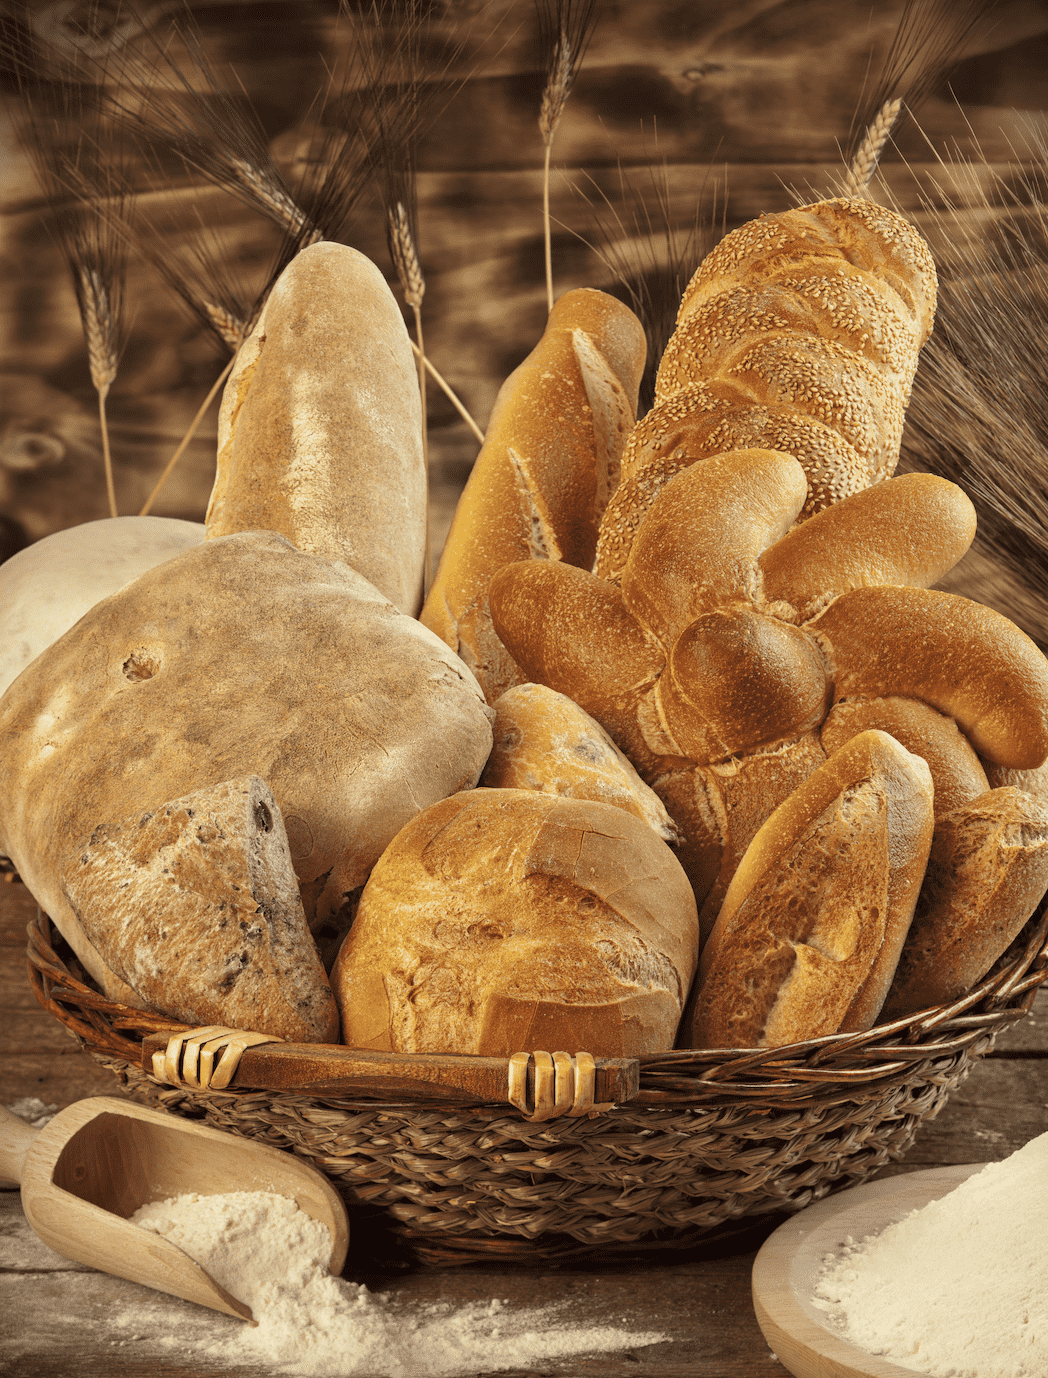 الحقيقة وارء اضرار الخبز على الصحة .. وهل يجب أن نتجنبه؟ - اضرار الكارب في الخبز